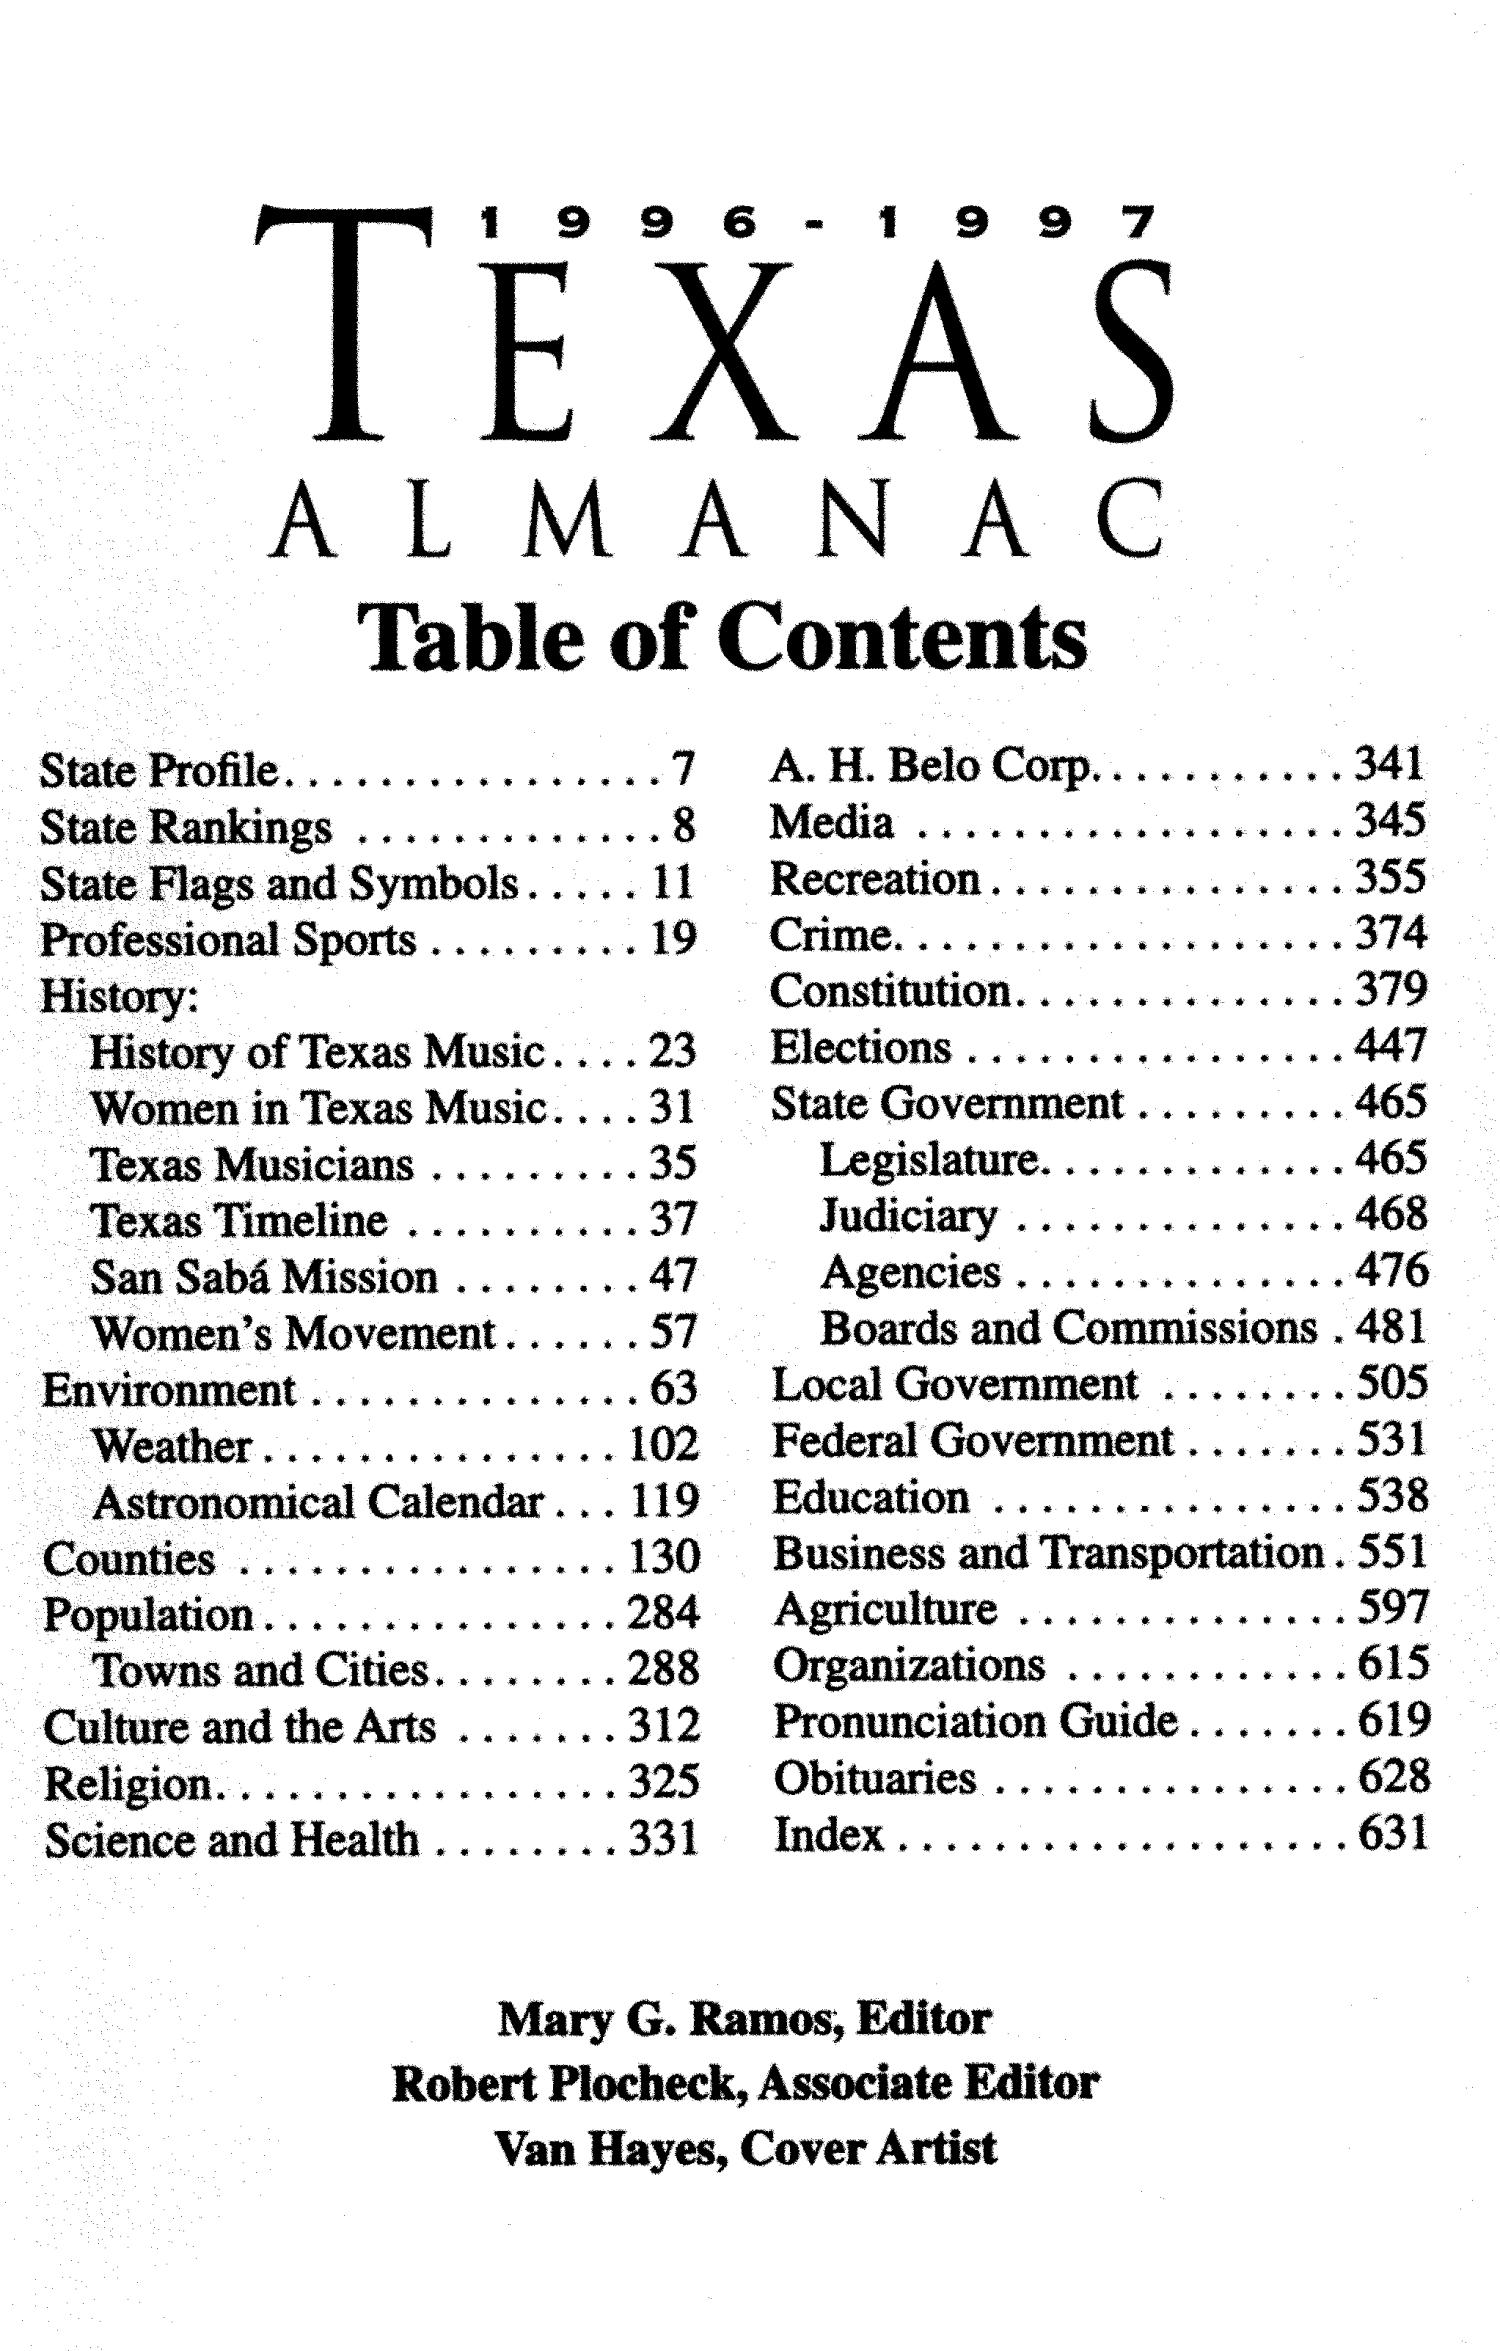 Texas Almanac, 1996-1997
                                                
                                                    3
                                                